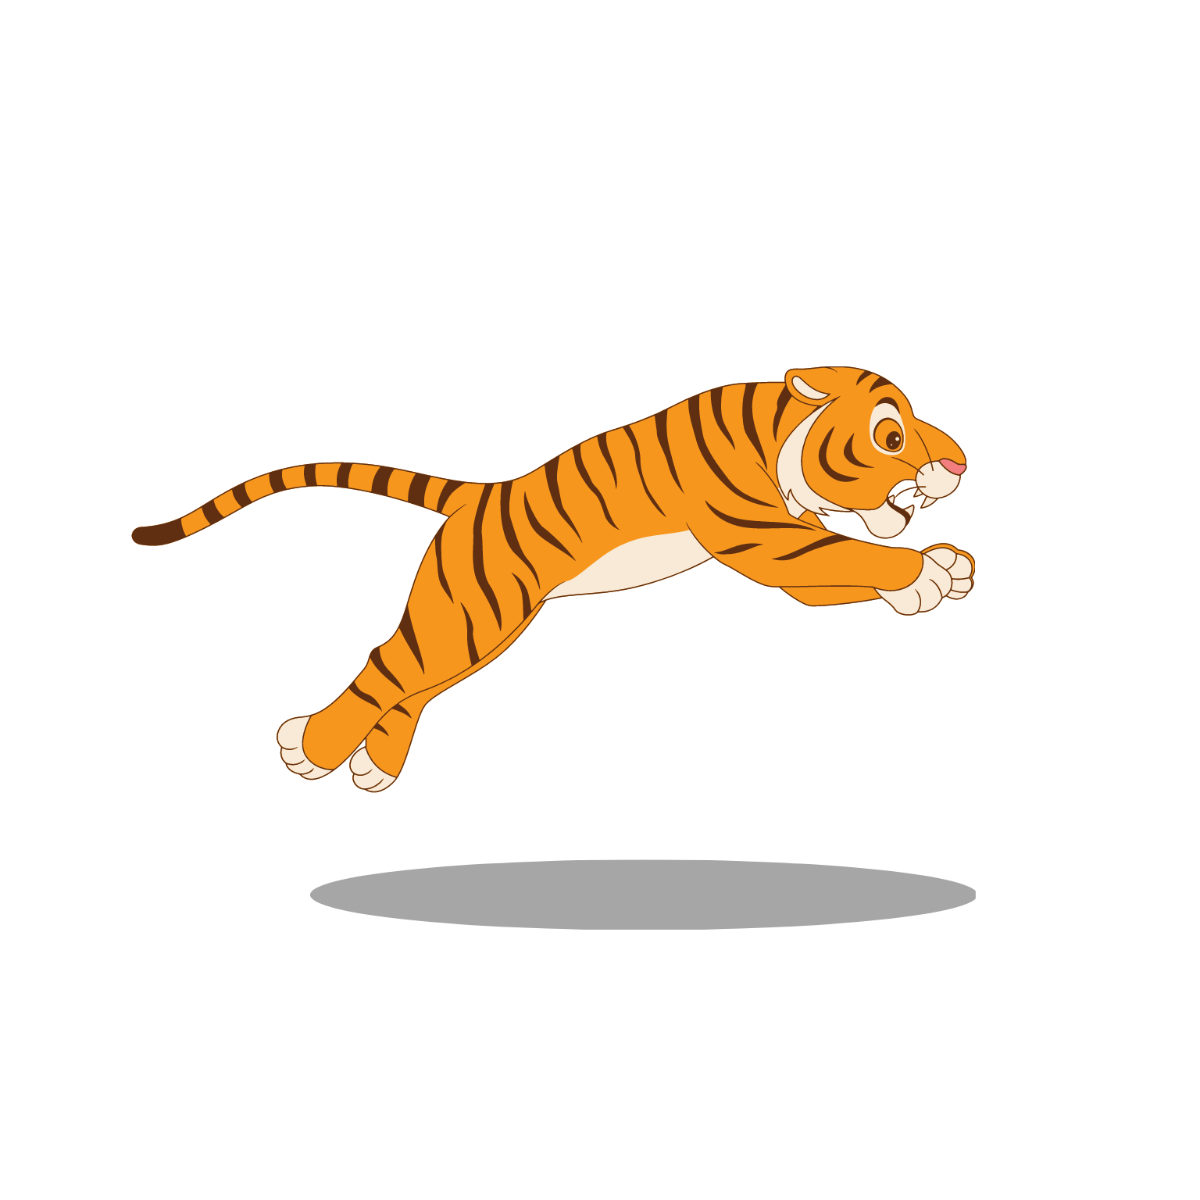 Jumping Tiger Vector